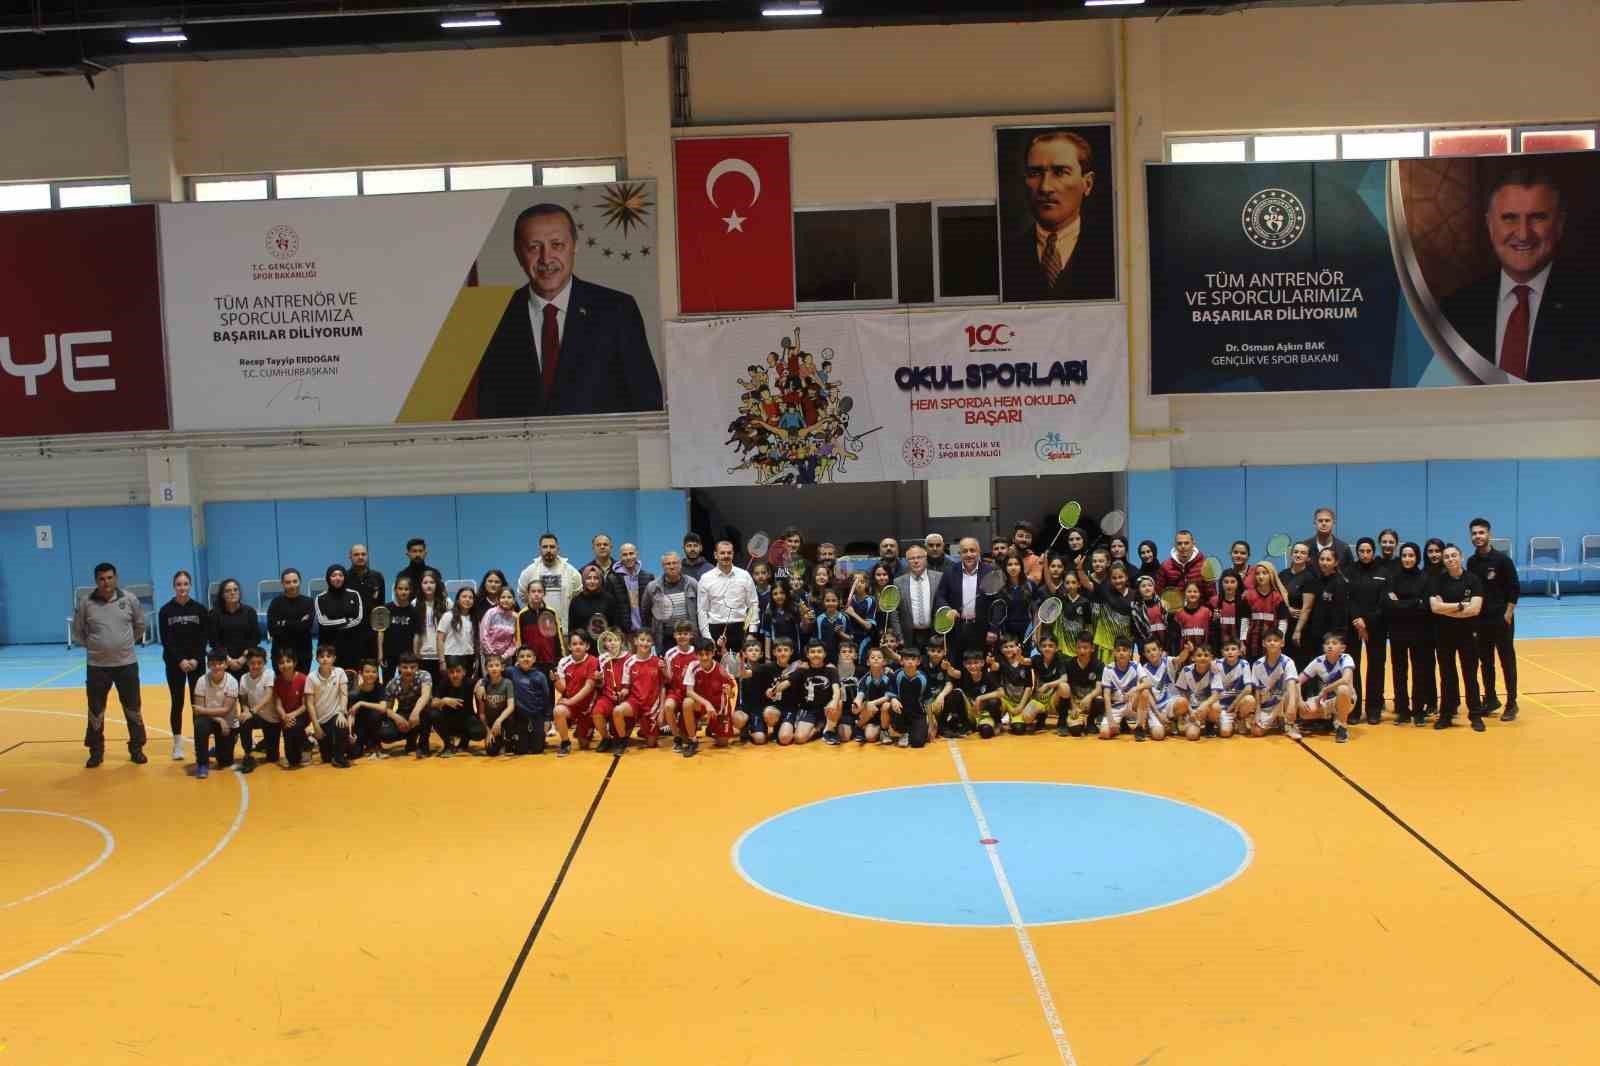 Okul Sporları ‘Badminton’ müsabakaları başladı
